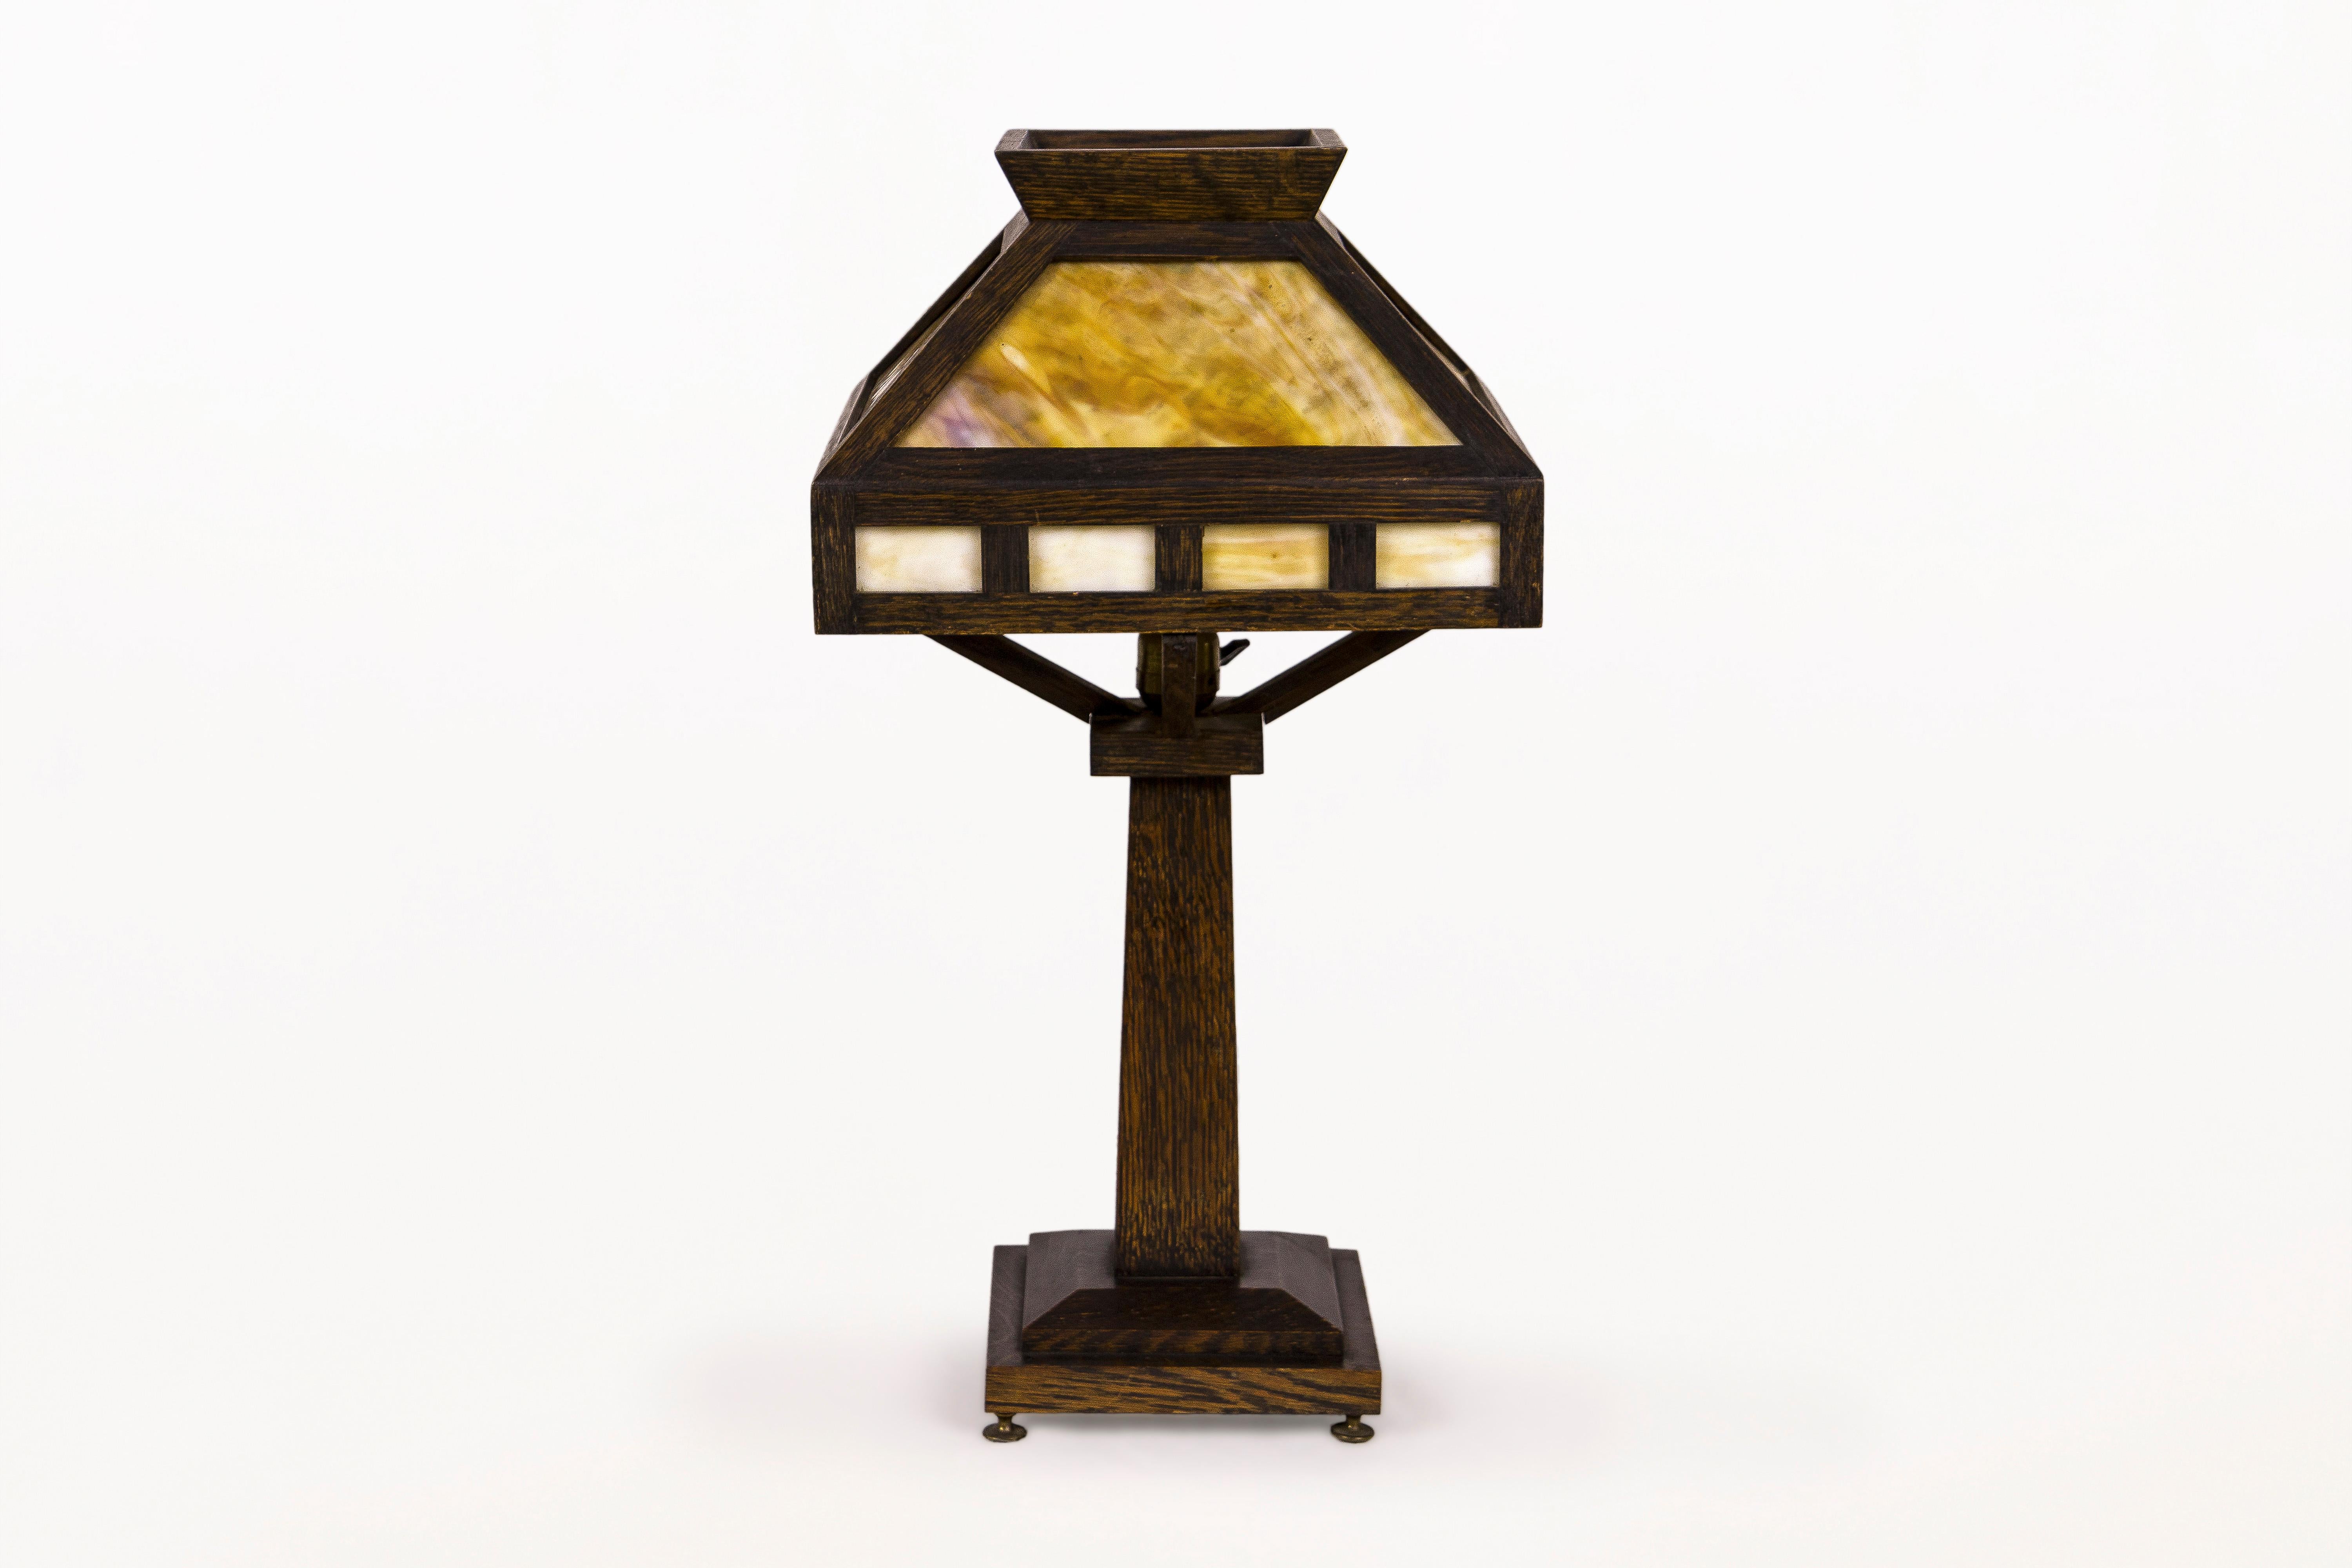 Lampe de table en chêne American Rustic Mission
Lampe de table classique Arts & Crafts en chêne.
La lampe a un abat-jour à quatre côtés avec un insert en verre de scorie caramel et une base à pied.
Finition entièrement originale avec une riche